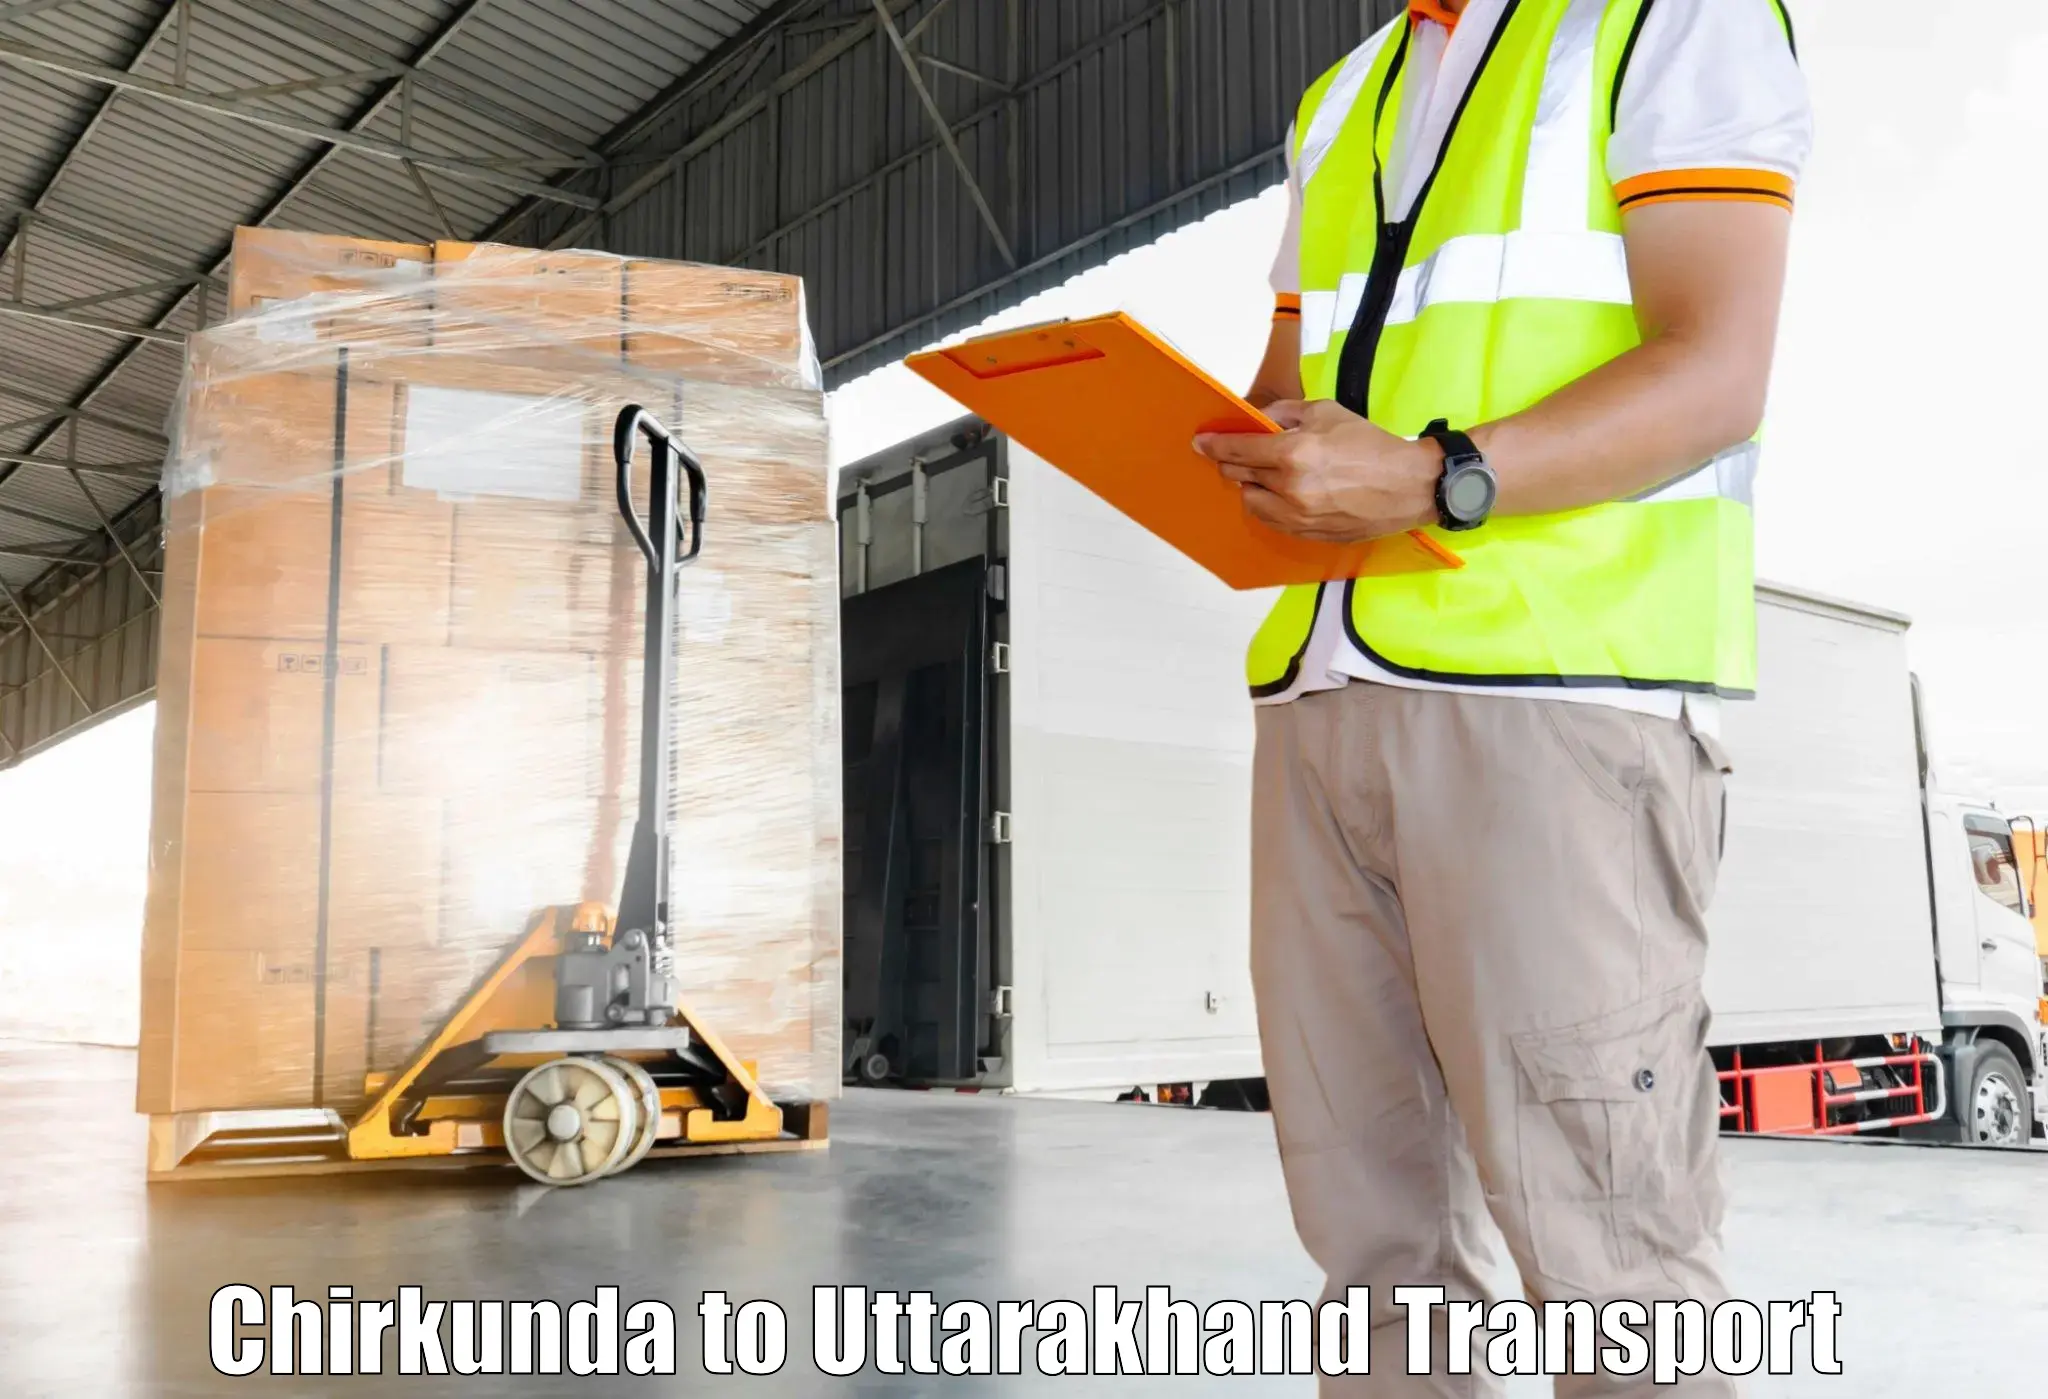 Cargo transportation services Chirkunda to Ranikhet